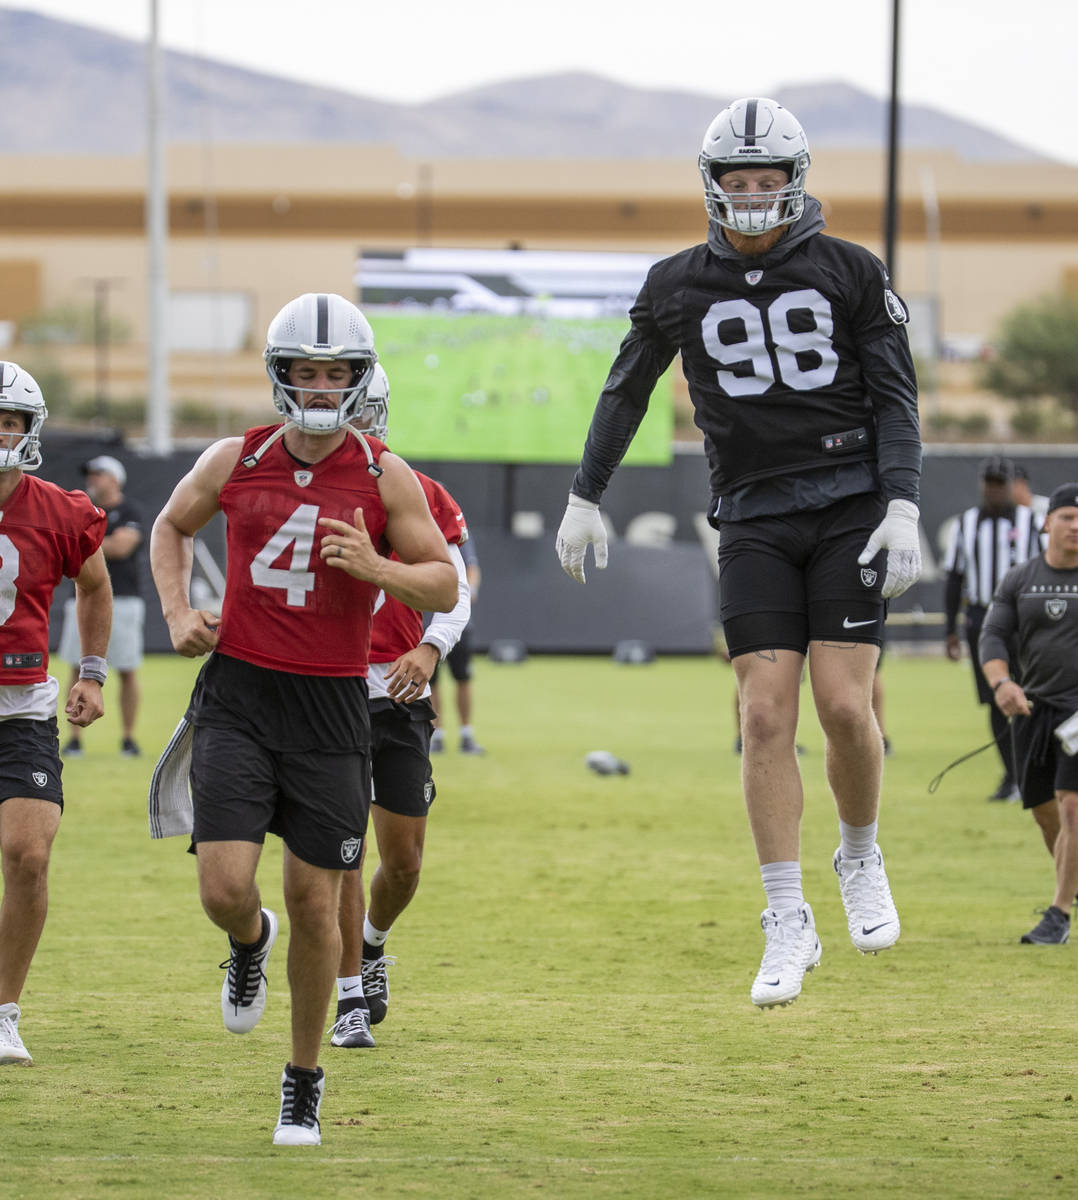 Raiders defensive end Maxx Crosby (98) leaps in the air as quarterback Derek Carr (4) runs alon ...